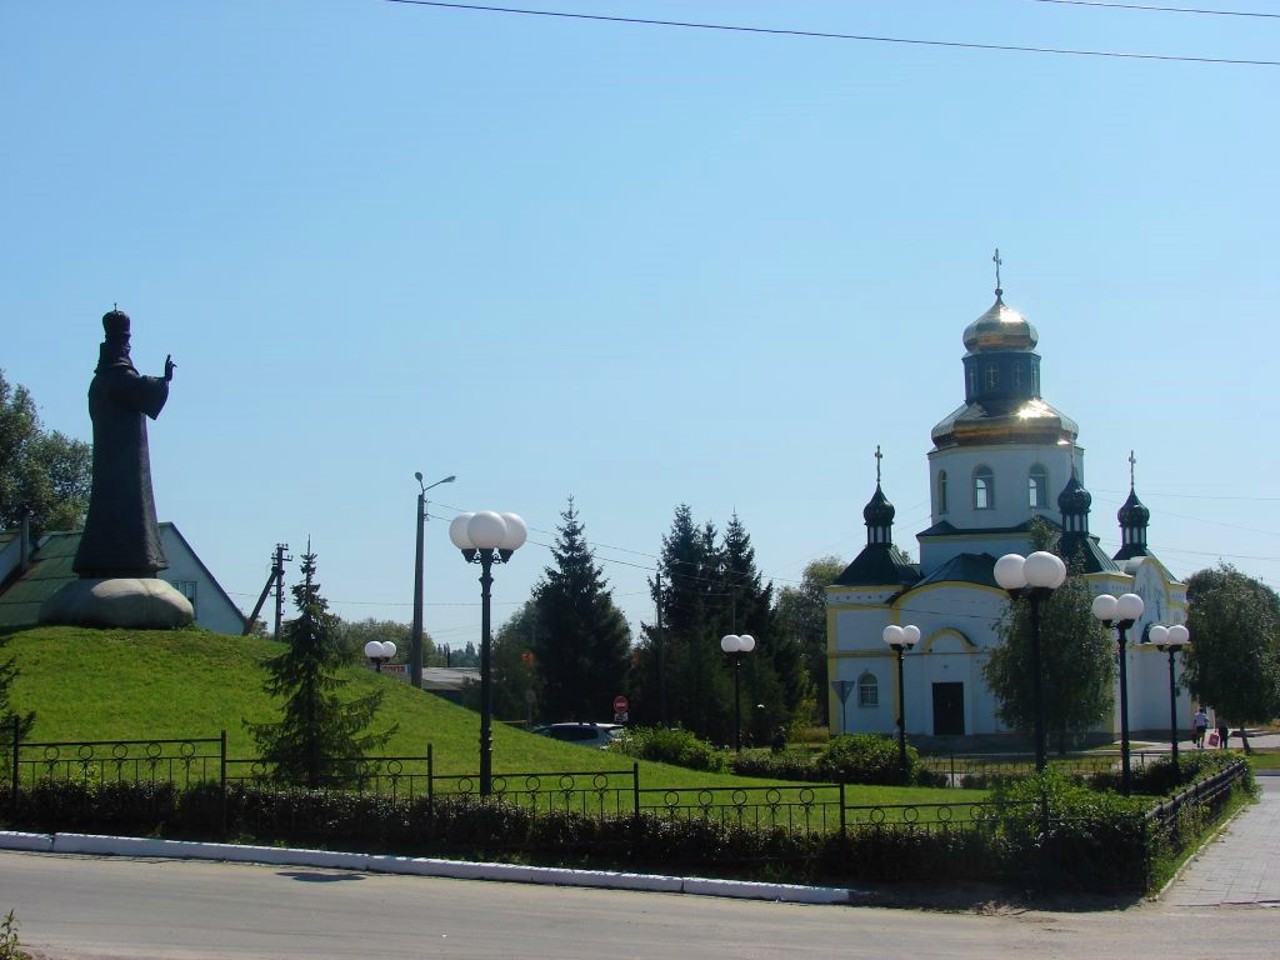 Makariv village